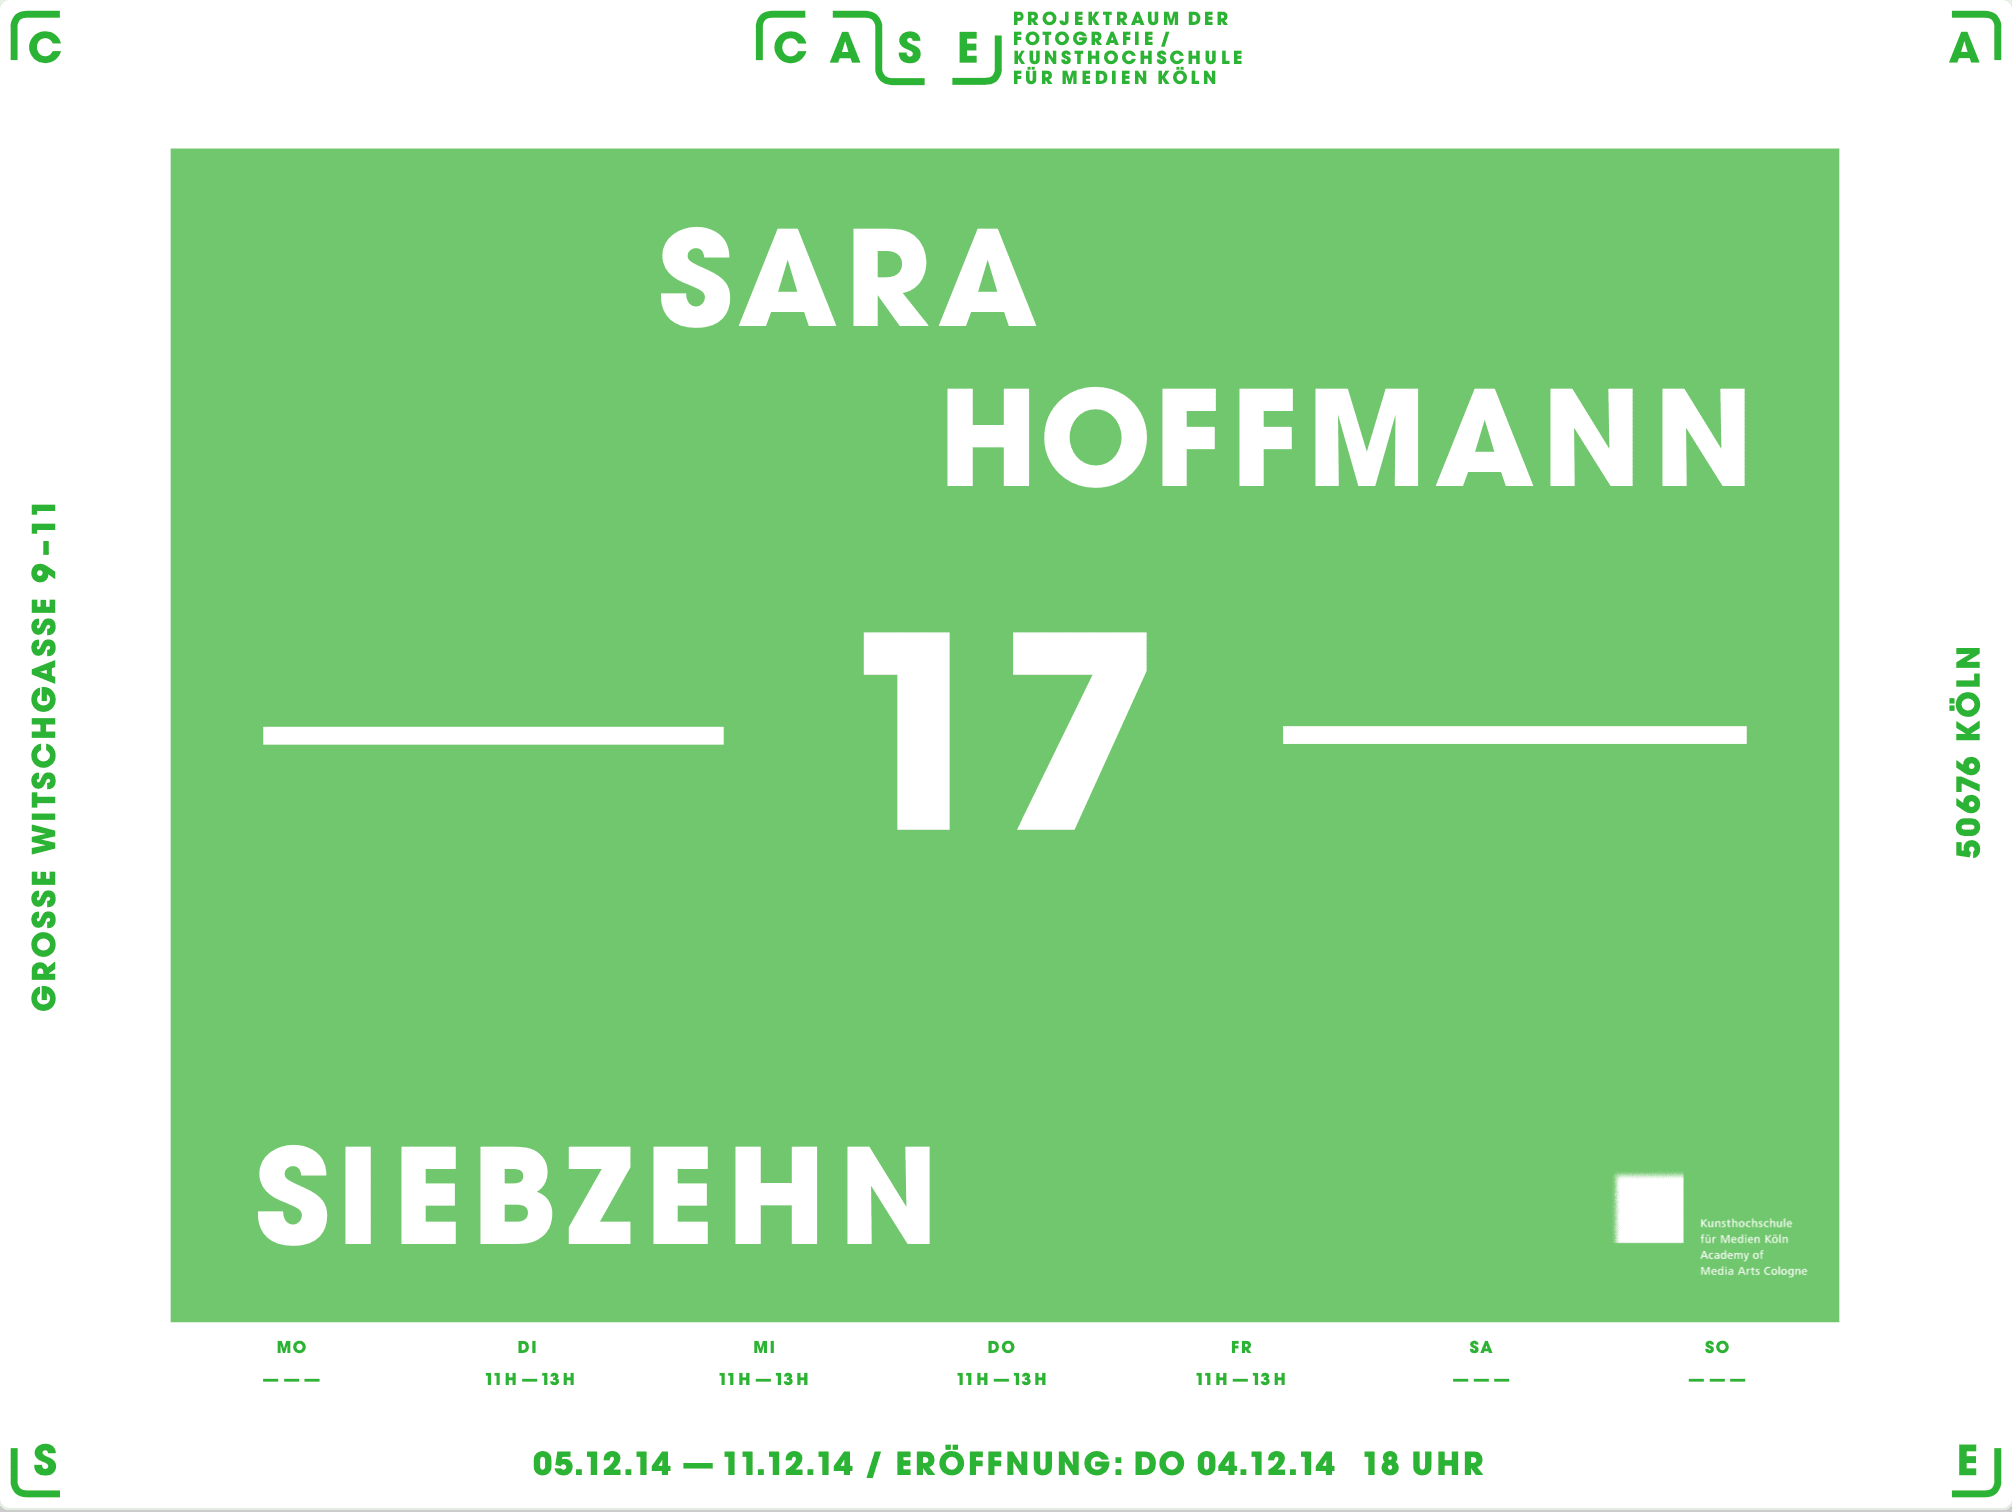 2014 Exhibition Case Sara Hoffmann Siebzehn